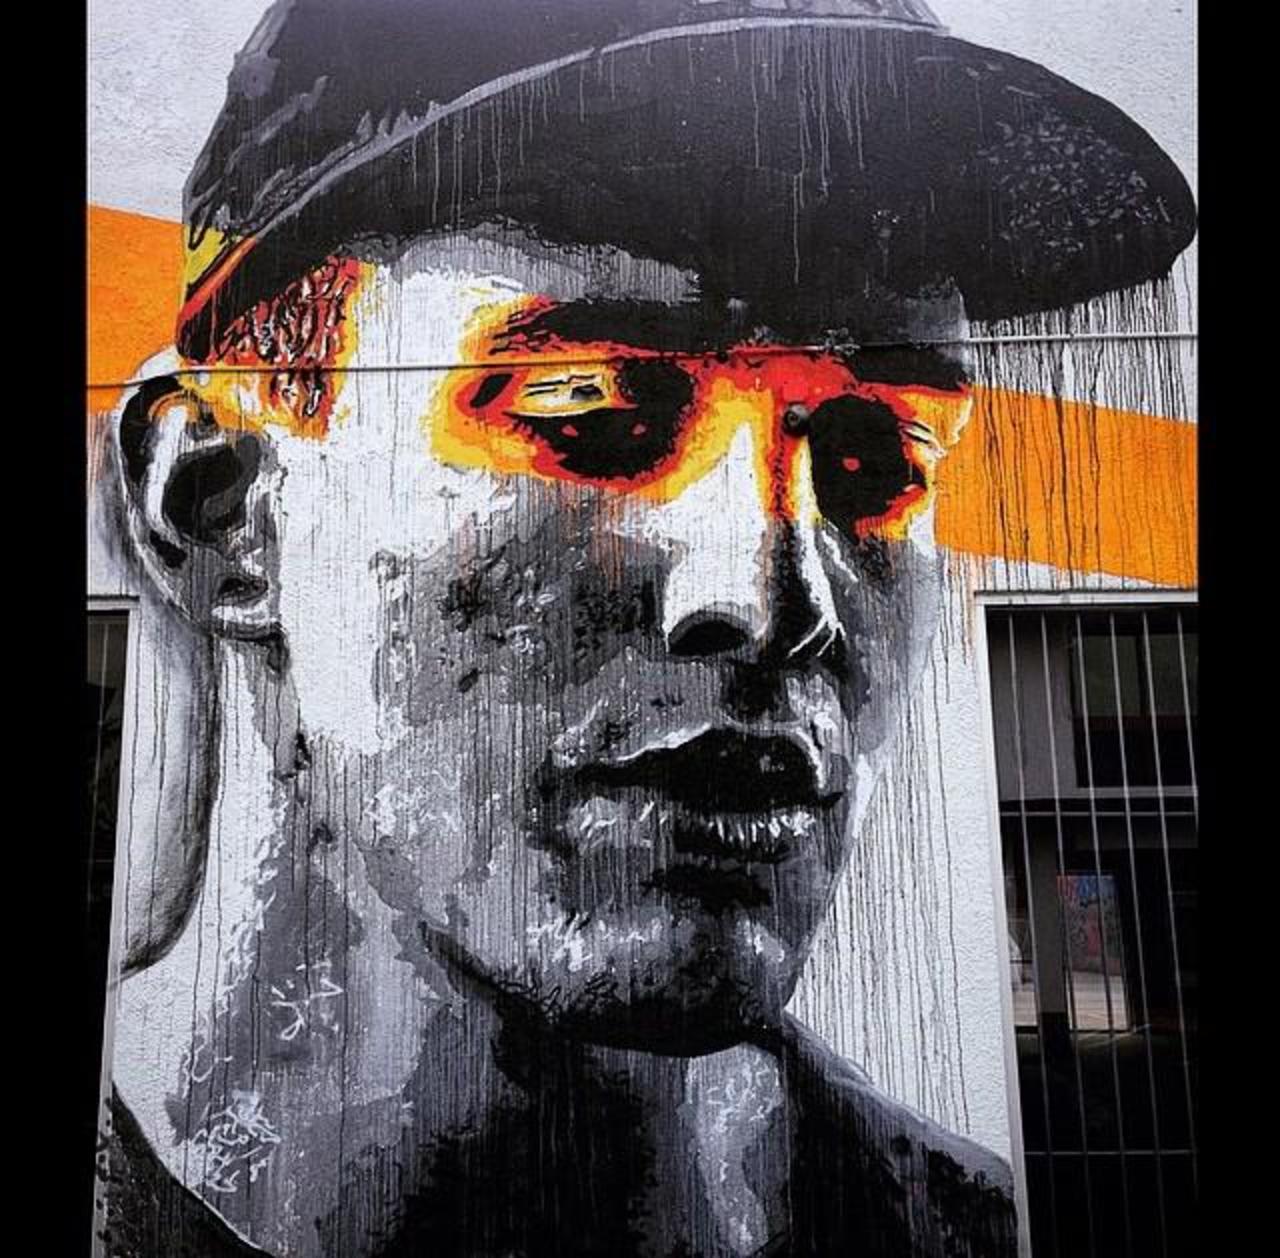 Artist Nils Westergard Street Art portrait in Miami 

#art #graffiti #mural #streetart http://t.co/Q6yFqBnzO9